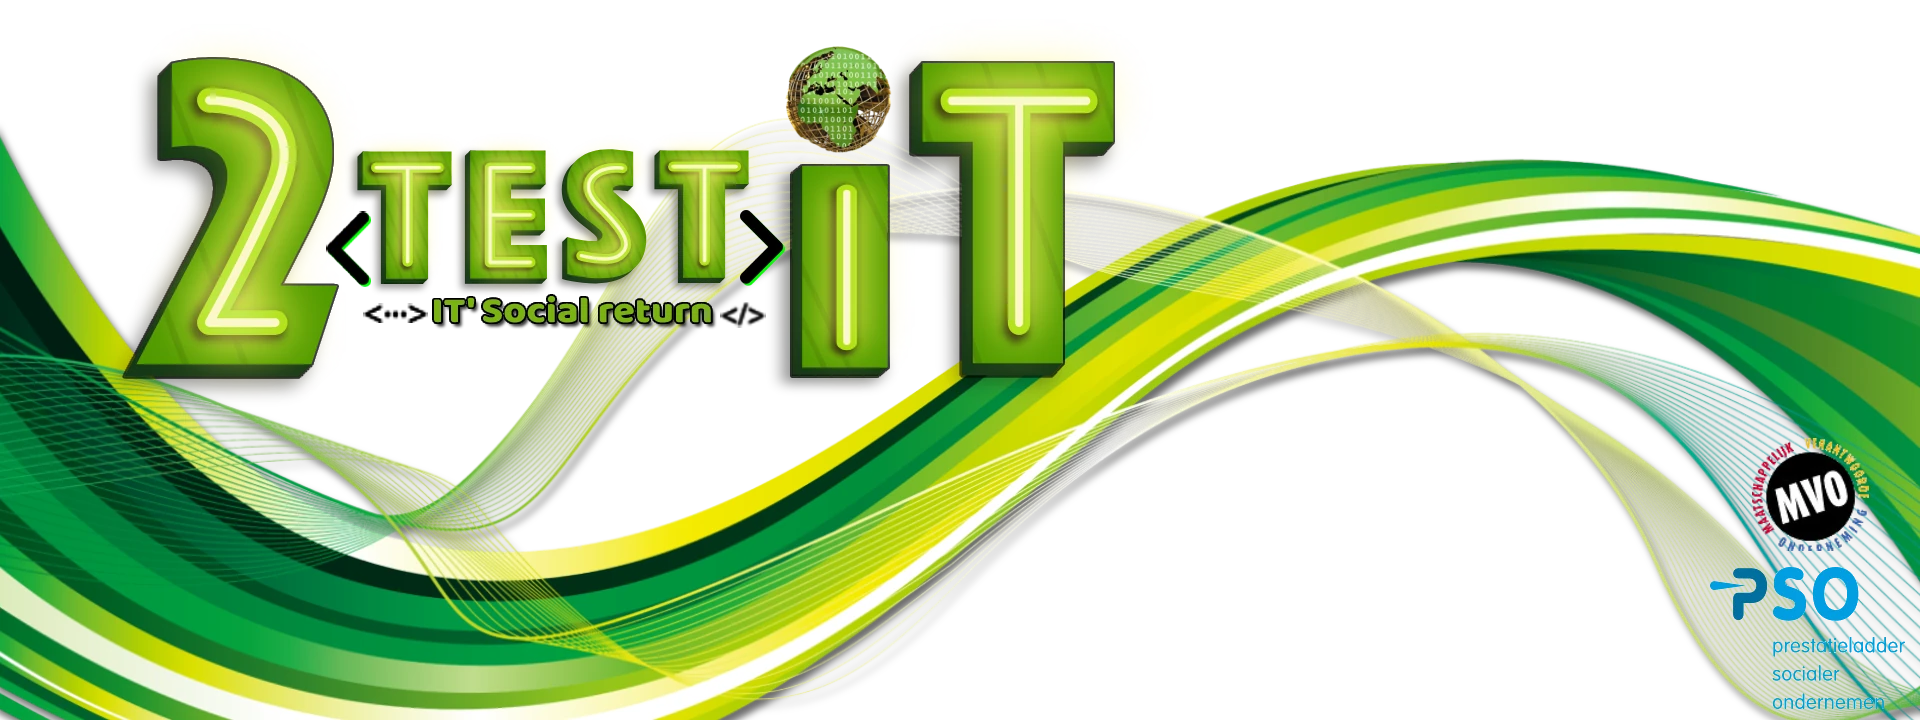 2TestIT logo